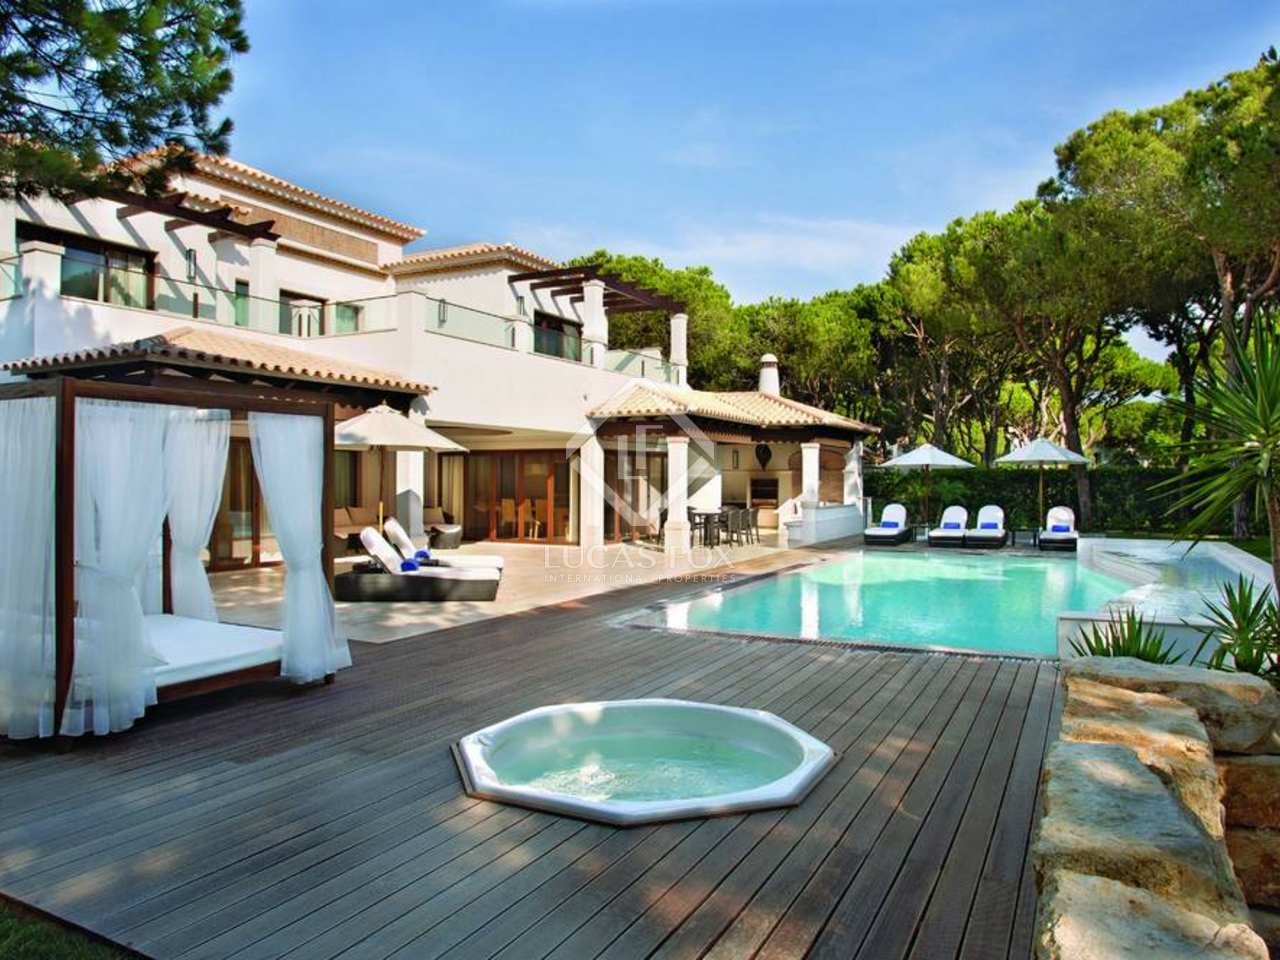 Haus Kaufen Algarve. haus kaufen portugal haus 683m kaufen ...